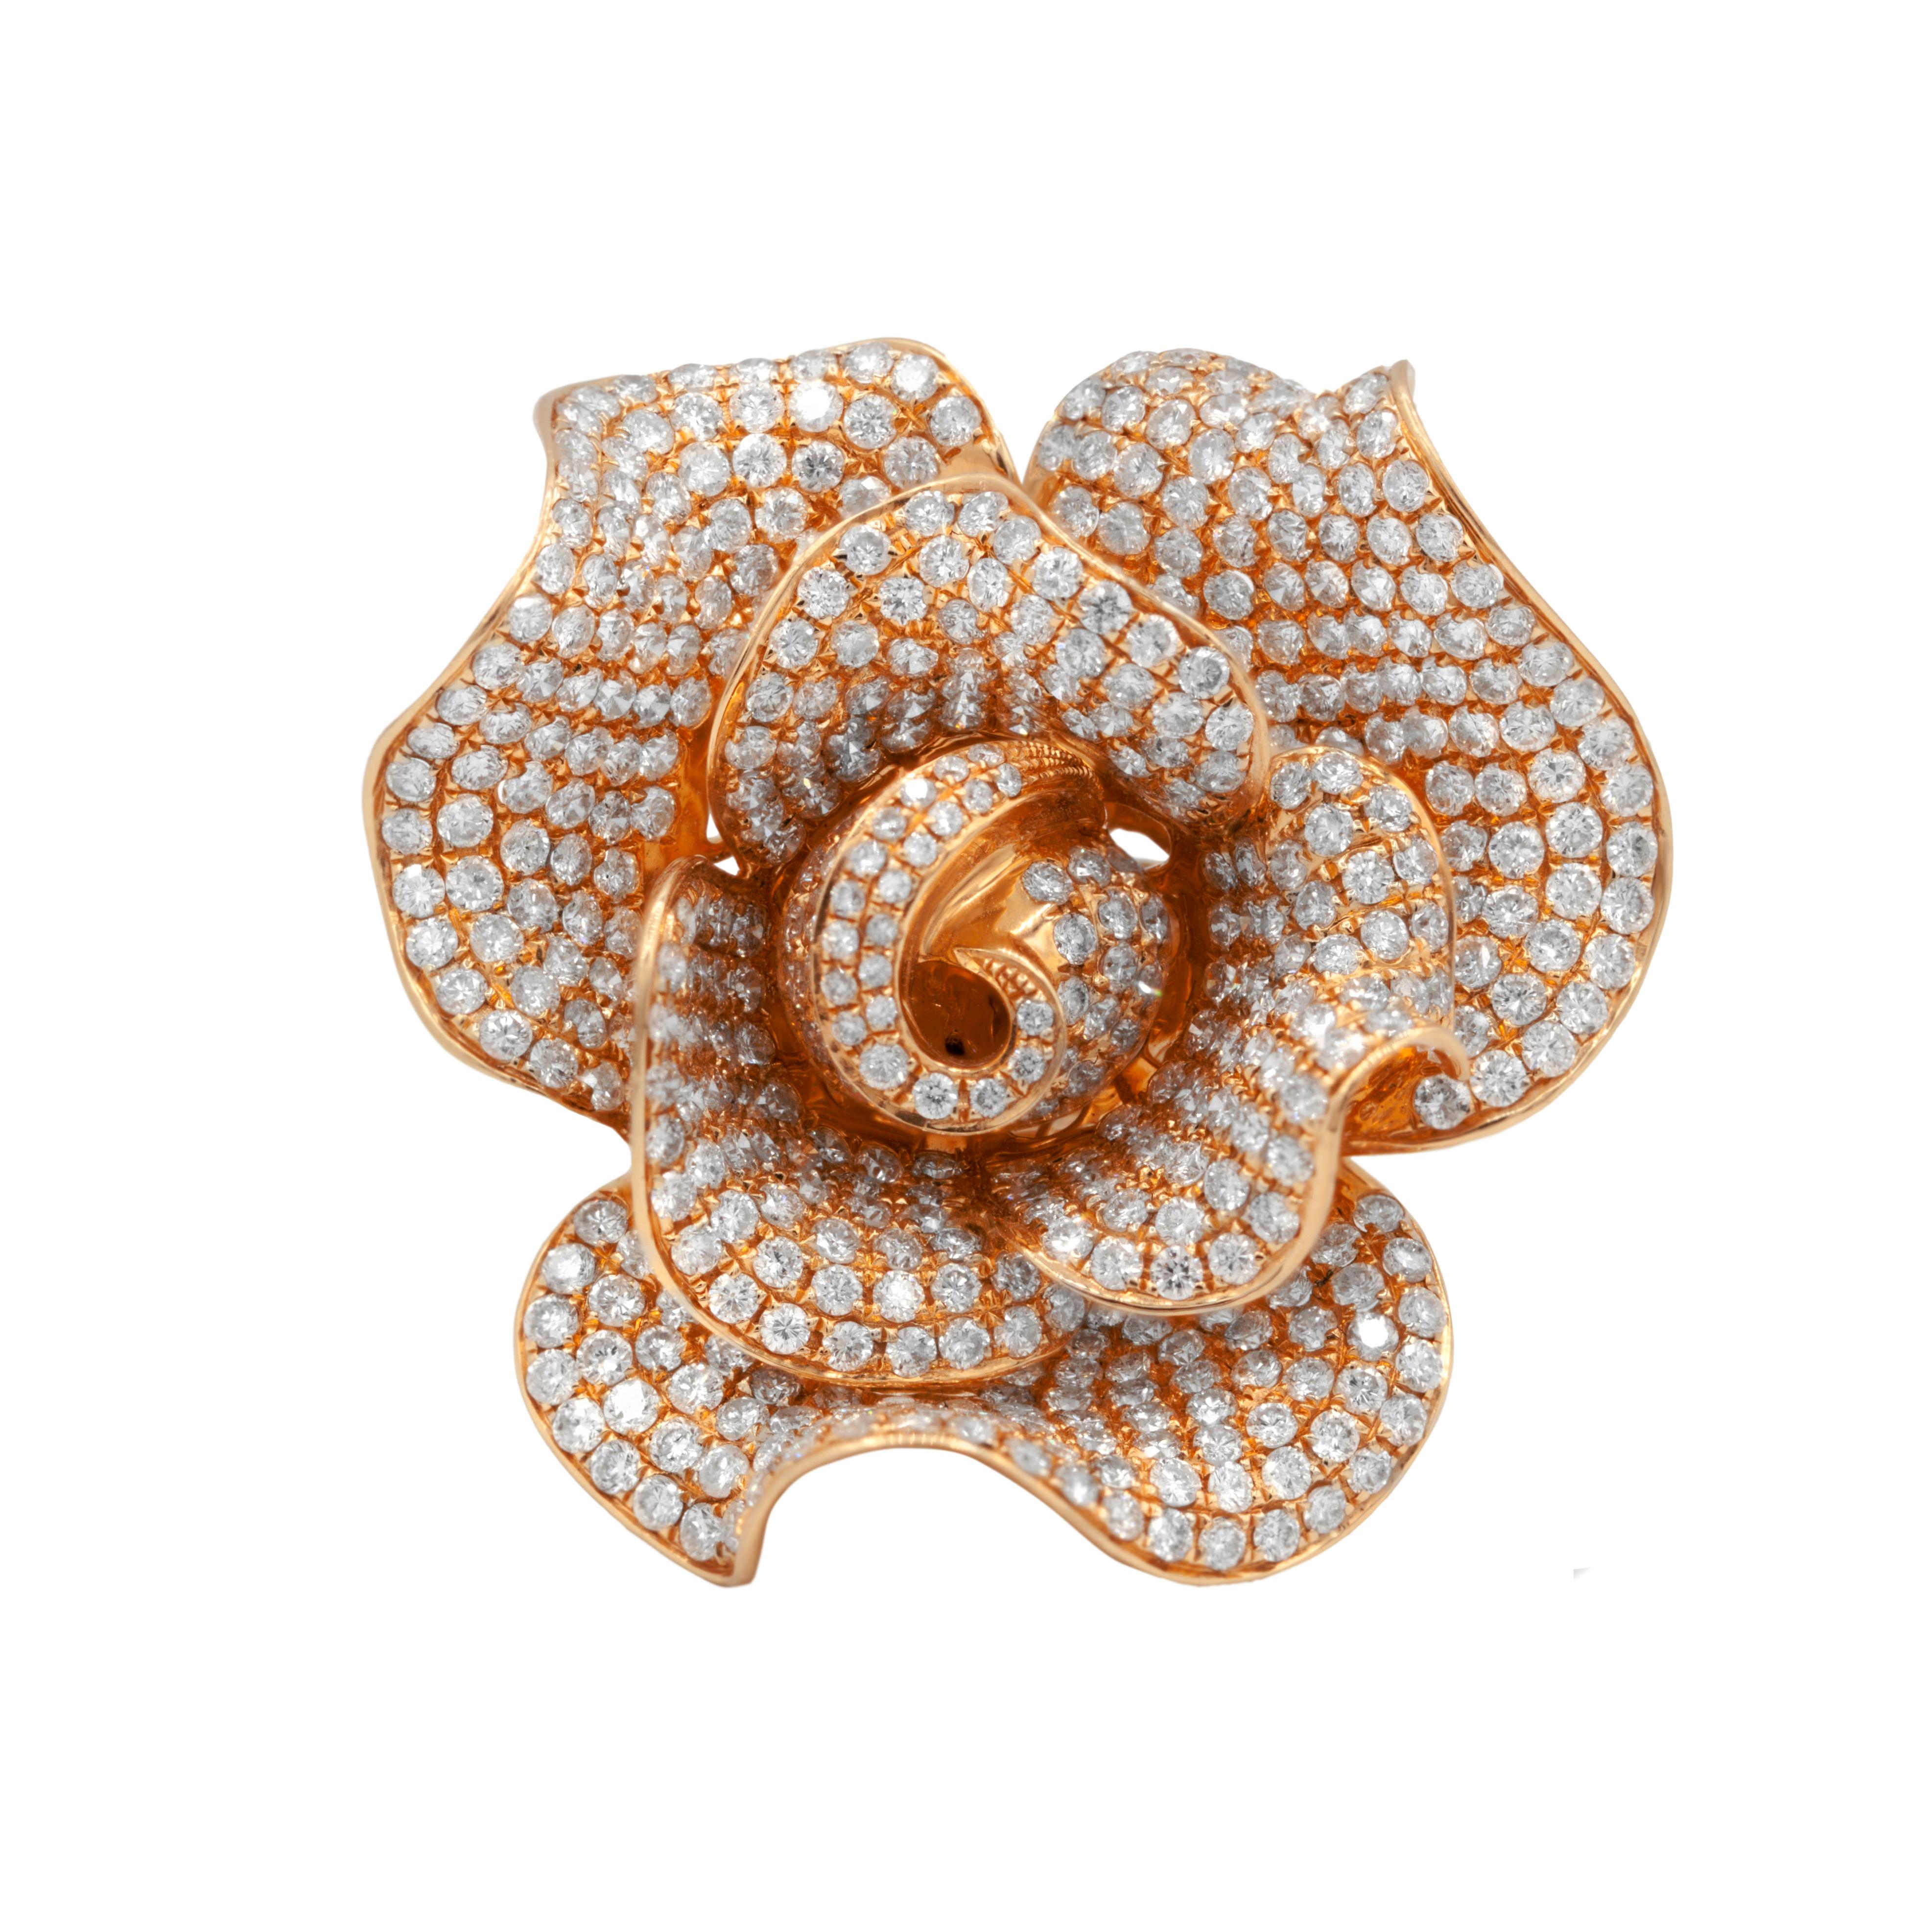 Bague de mode en or rose 18 carats à motif de rose contenant 7,50 cts tw de diamants pouvant être retirés et portés en broche.
A&M est un fournisseur de premier plan de bijoux fins de qualité supérieure depuis plus de 35 ans.
Diana M-One est un